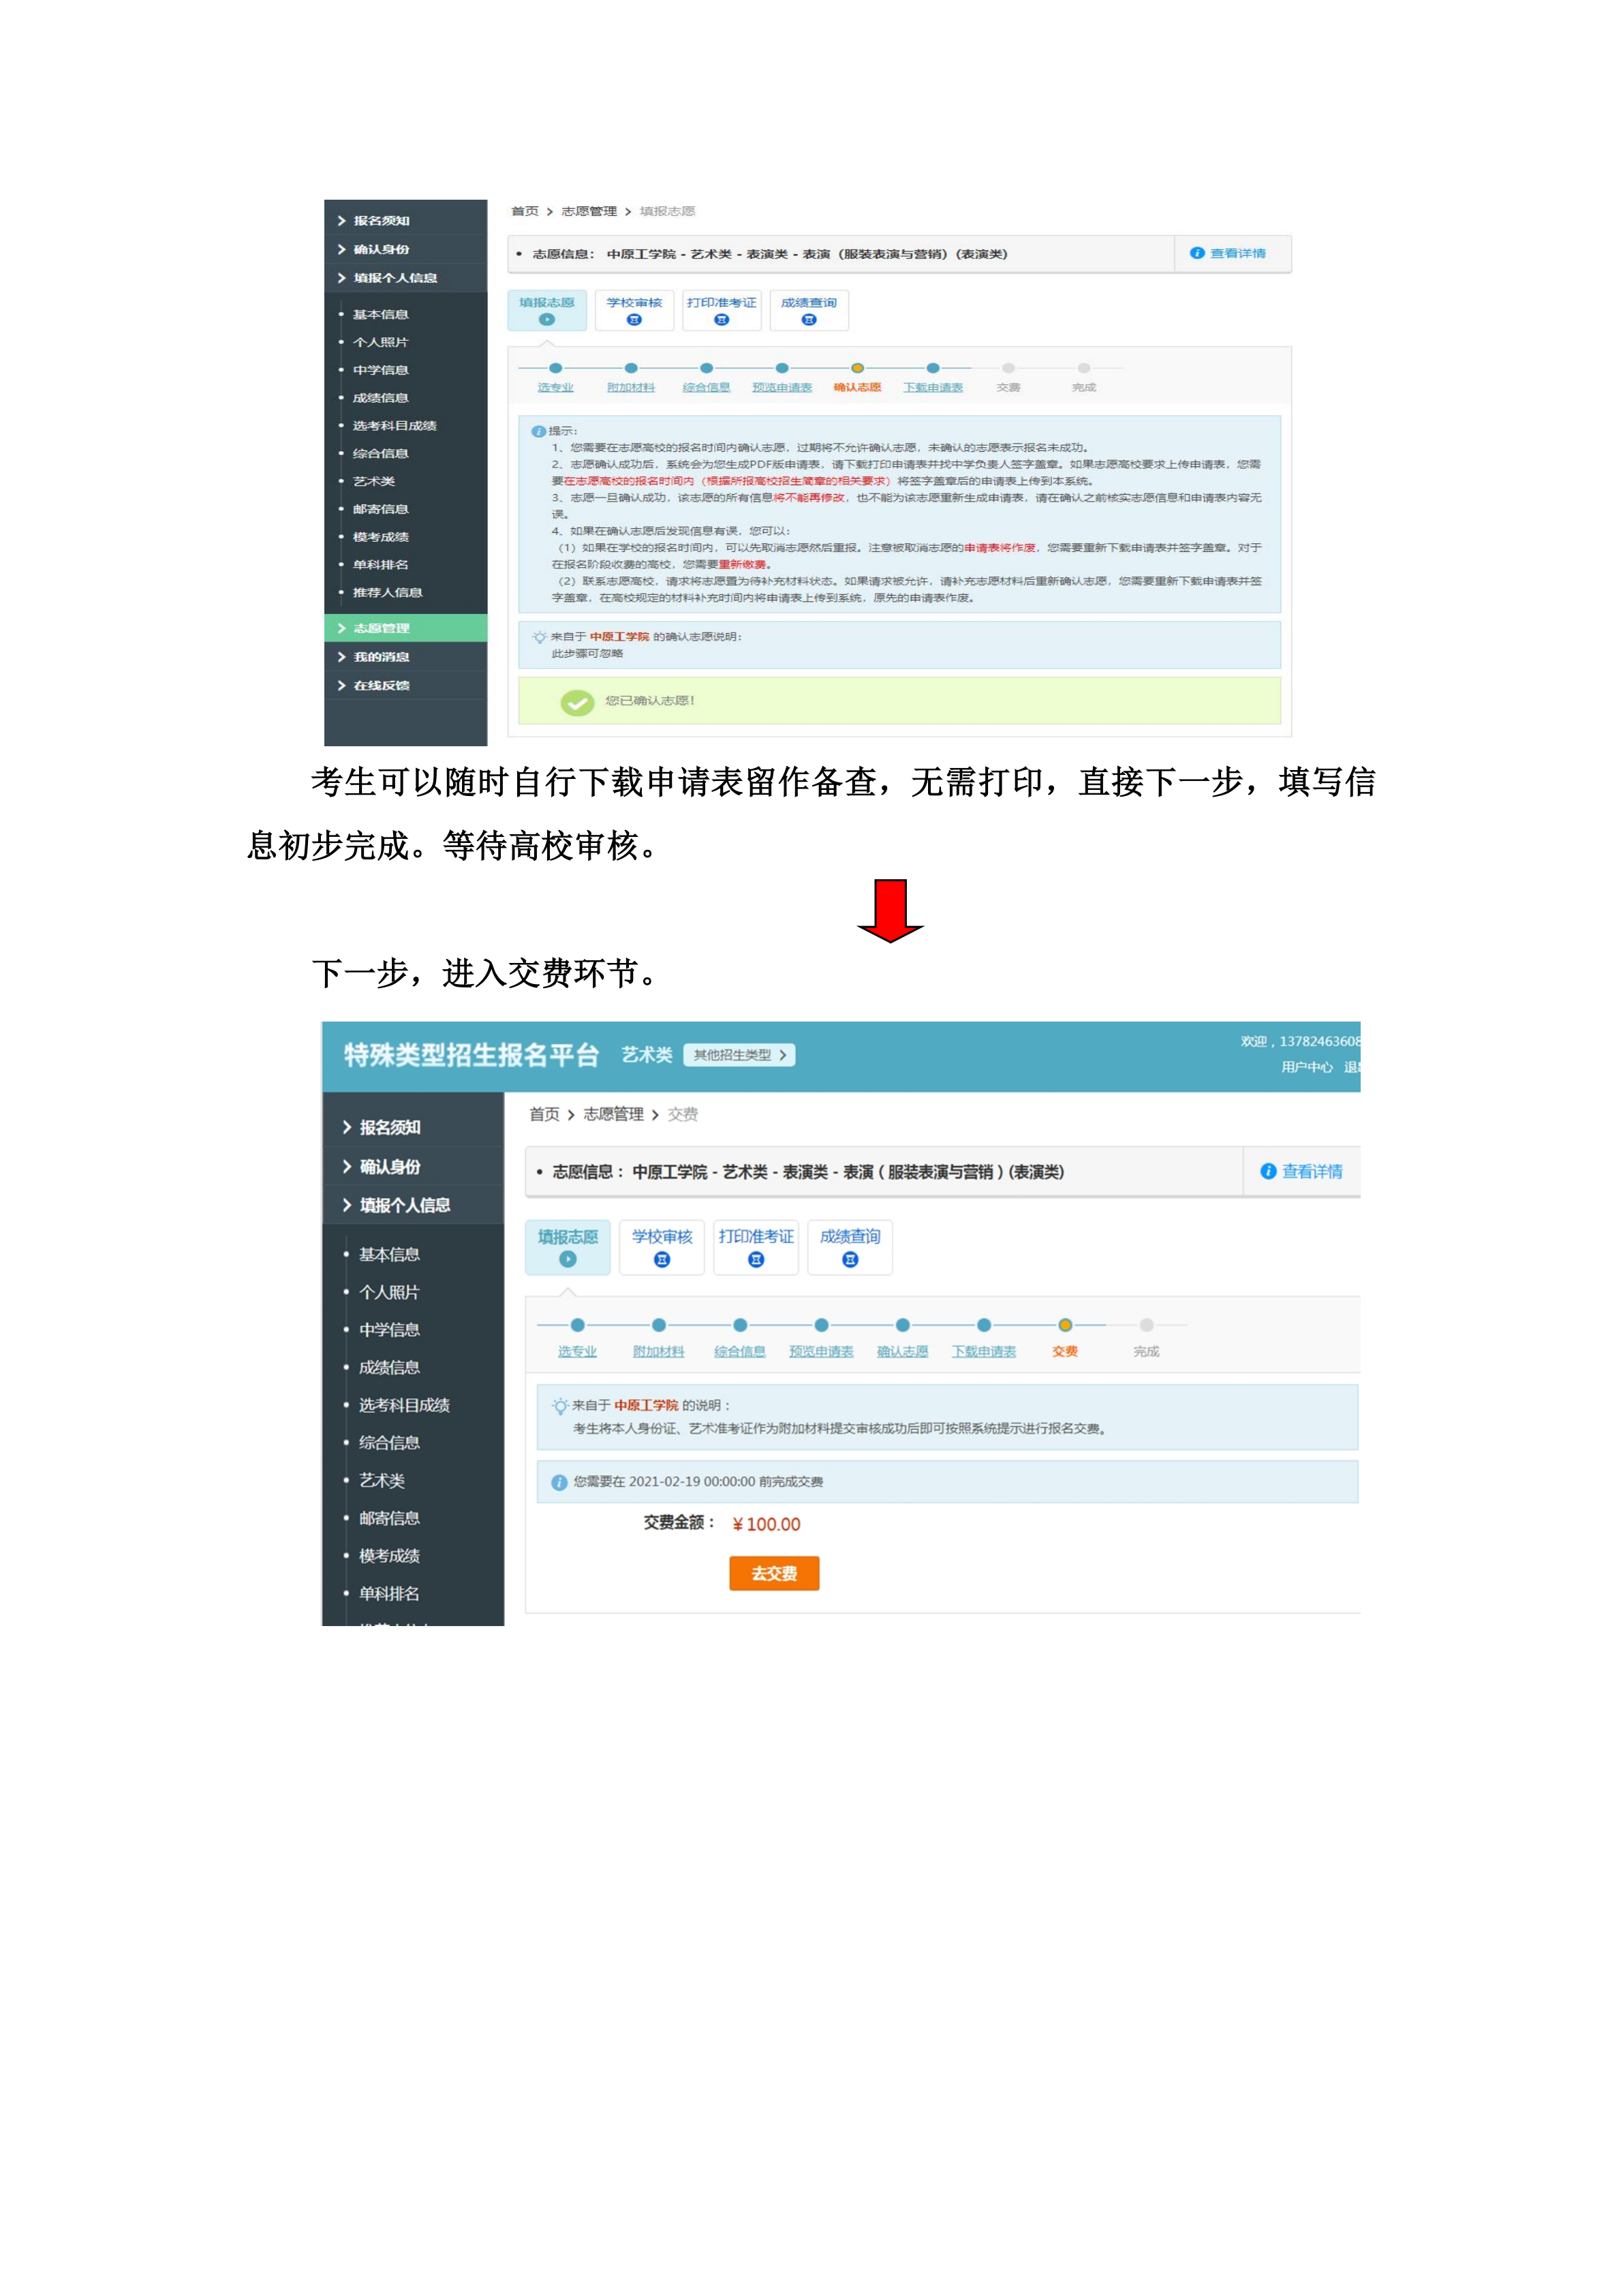 中原工学院表演专业网上报名流程(1)_11.png